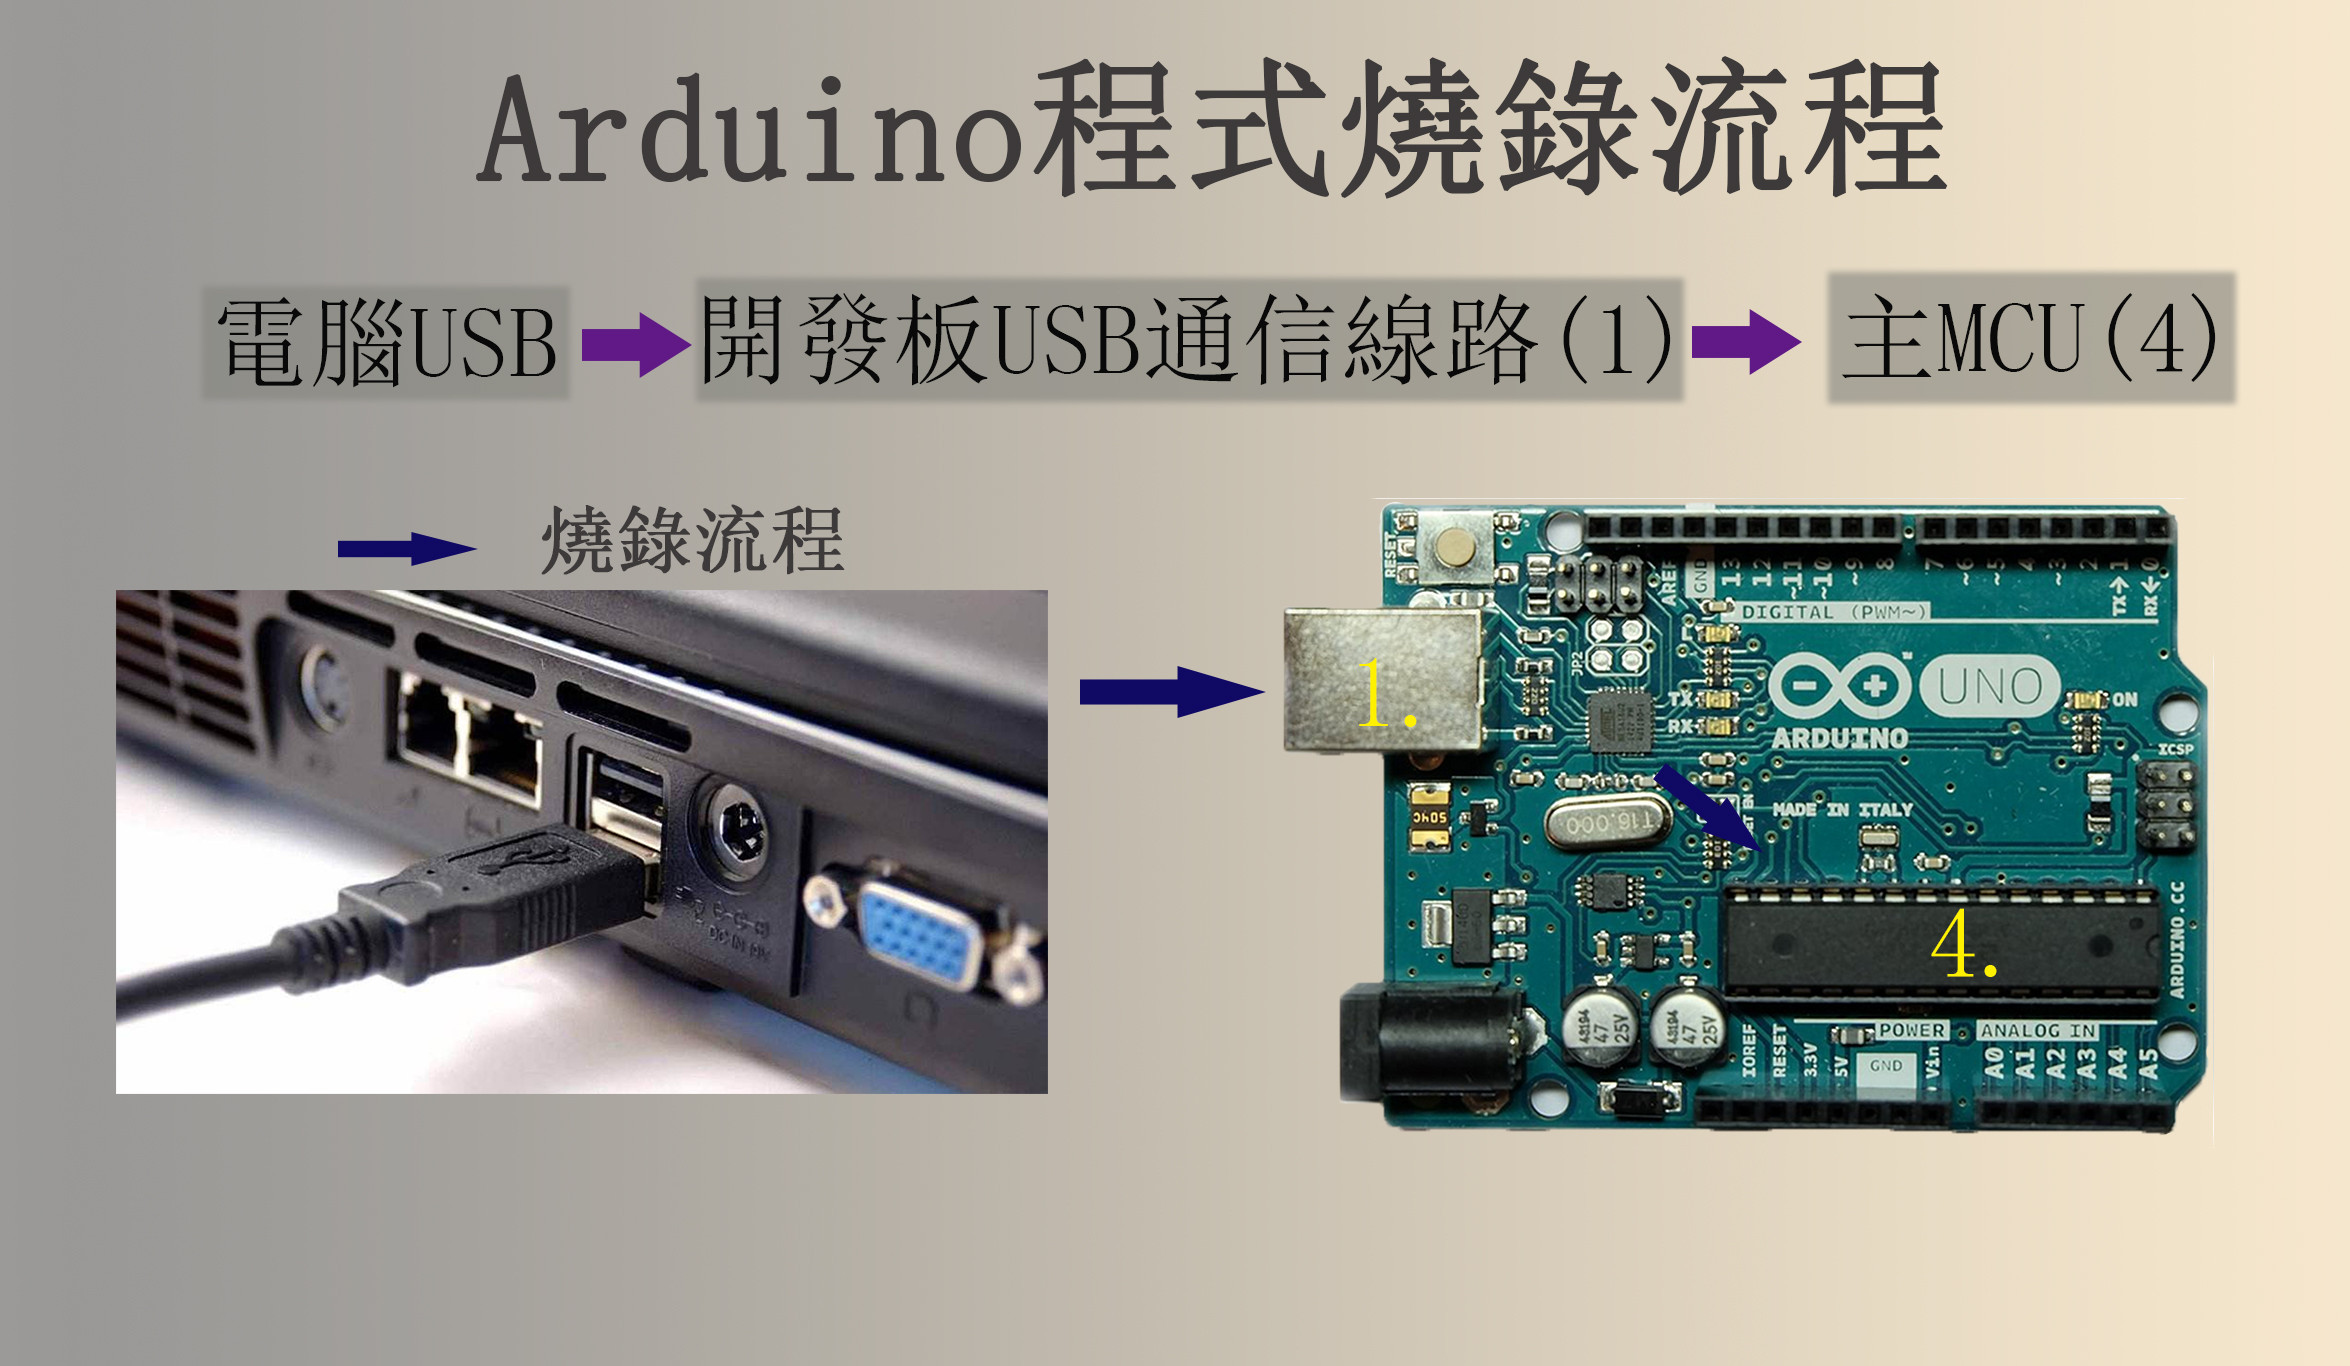 DuinoDump:最方便的Arduino下載/燒錄器【正文】什麼人最需要DuinoDump?為何要設計DuinoDump?Arduino科普Arduino開發板的架構DuinoDump能做到什麼?DuinoDump參數:套件內容:Q & A案件進度:風險與變數回饋選單